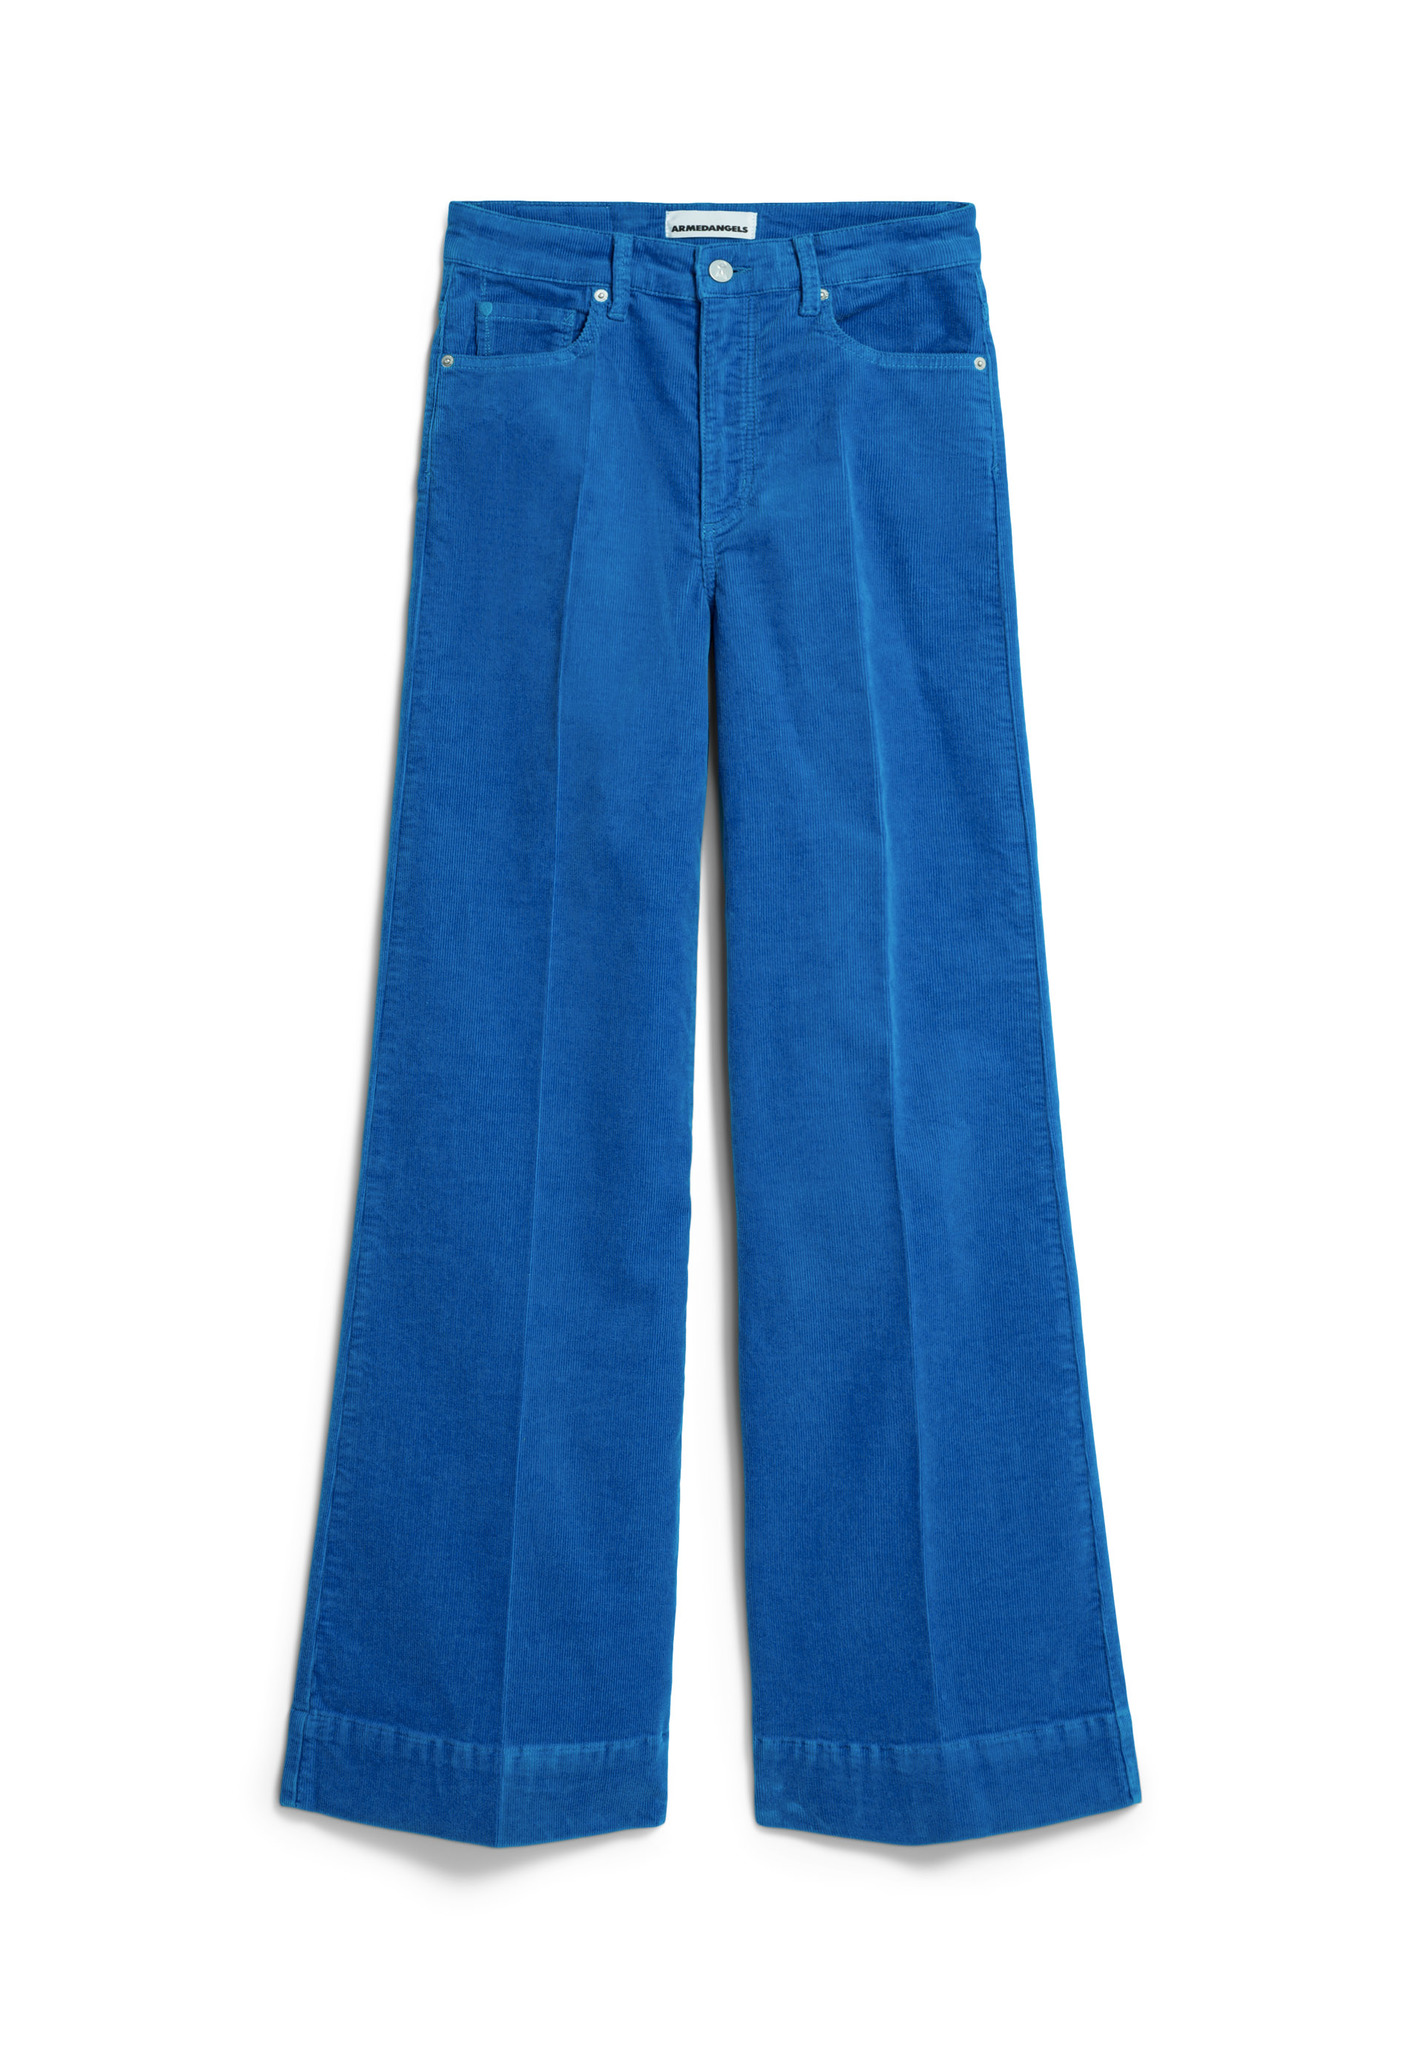 Pantalon Murliaa - velours - coton biologique - warm blue - Armed Angels 06